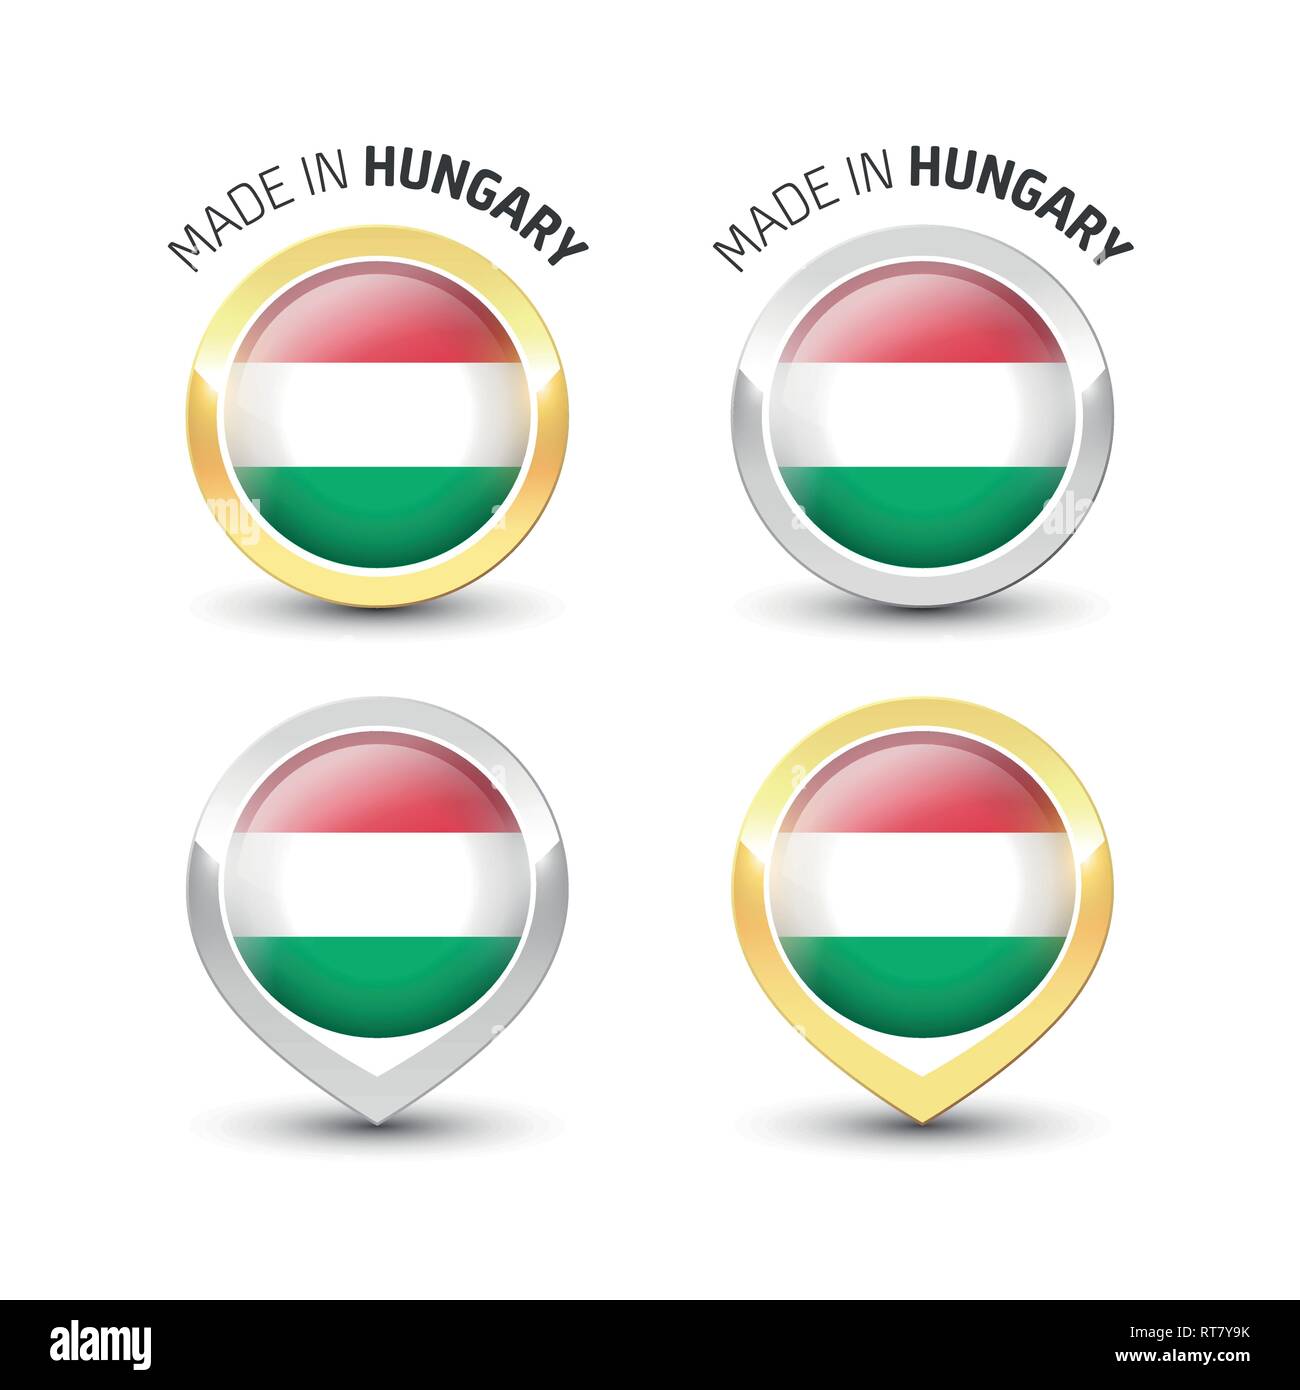 Fabbricato in Ungheria - etichetta di garanzia con la bandiera ungherese all'interno del turno oro e argento icone. Illustrazione Vettoriale